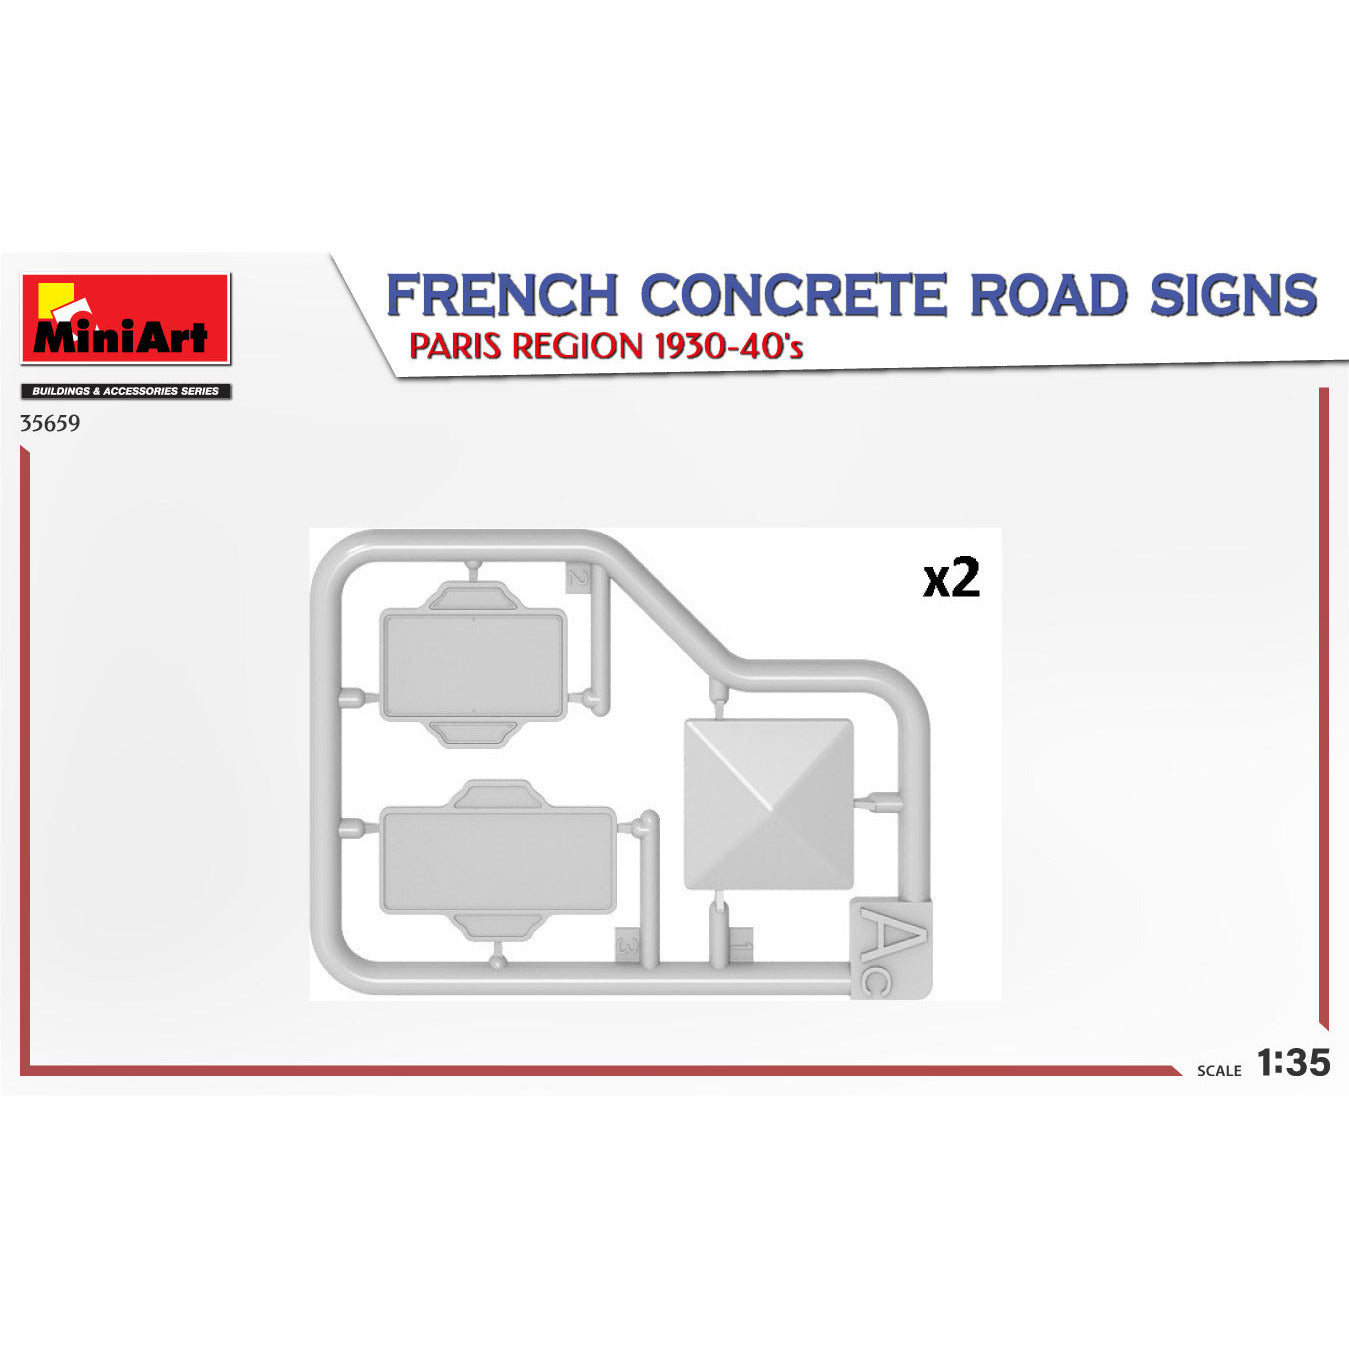 MINIART 1/35 French Concrete Road Signs. Paris Region 1930-40's